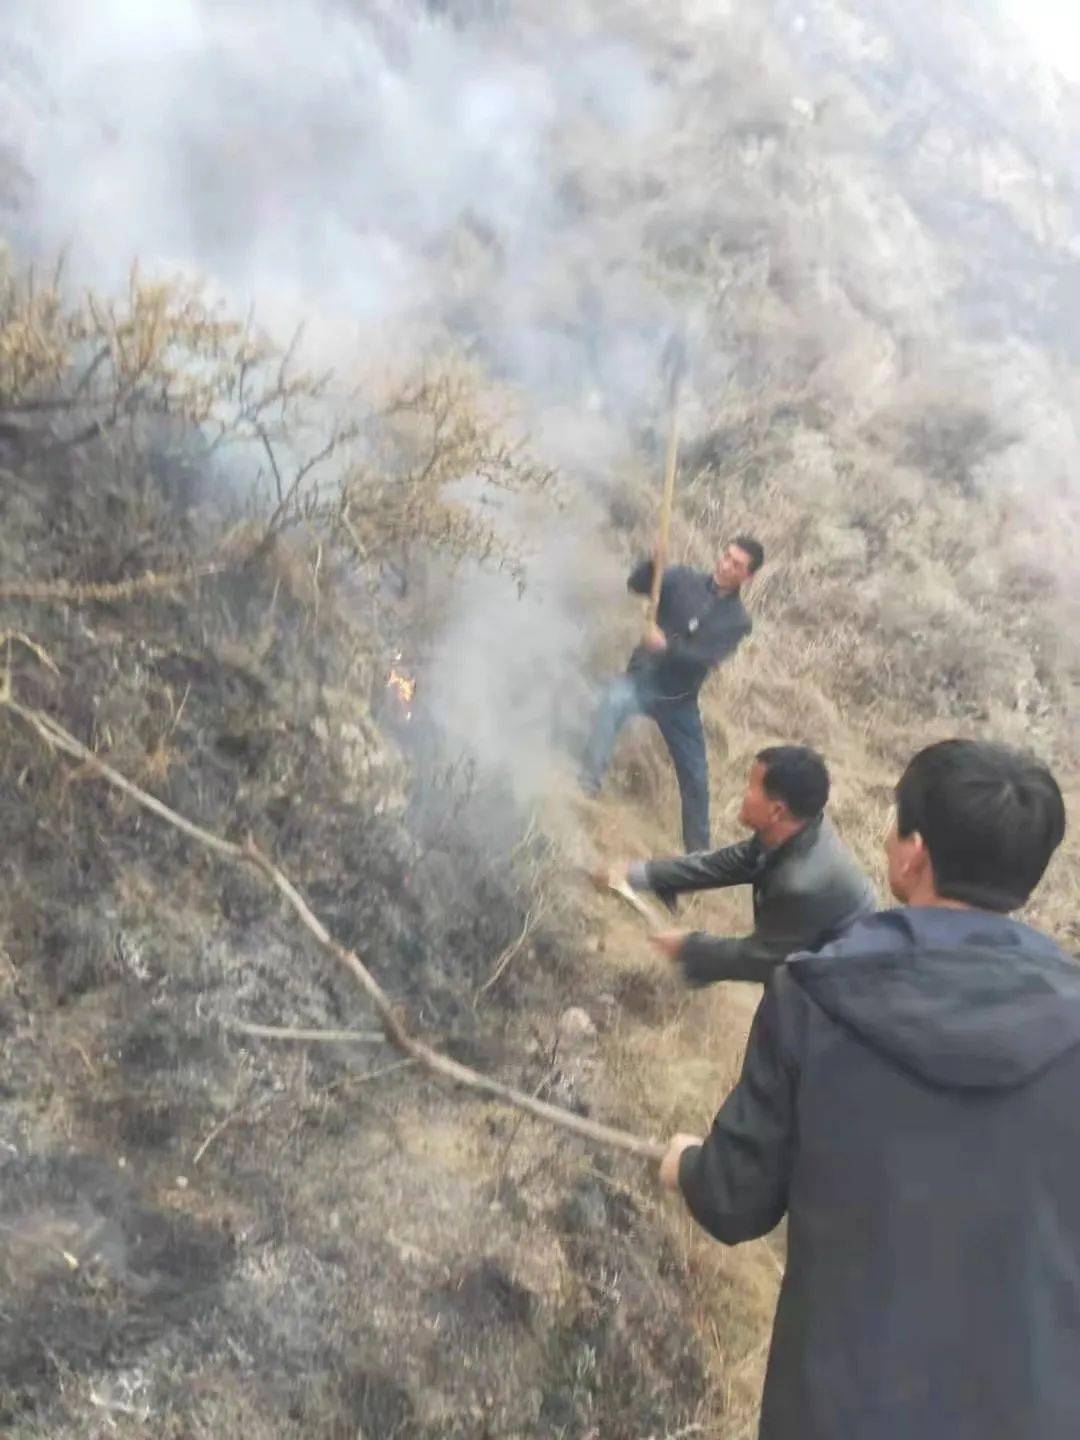 临夏州应急管理局迅速组织人员扑救积石山安集镇山火